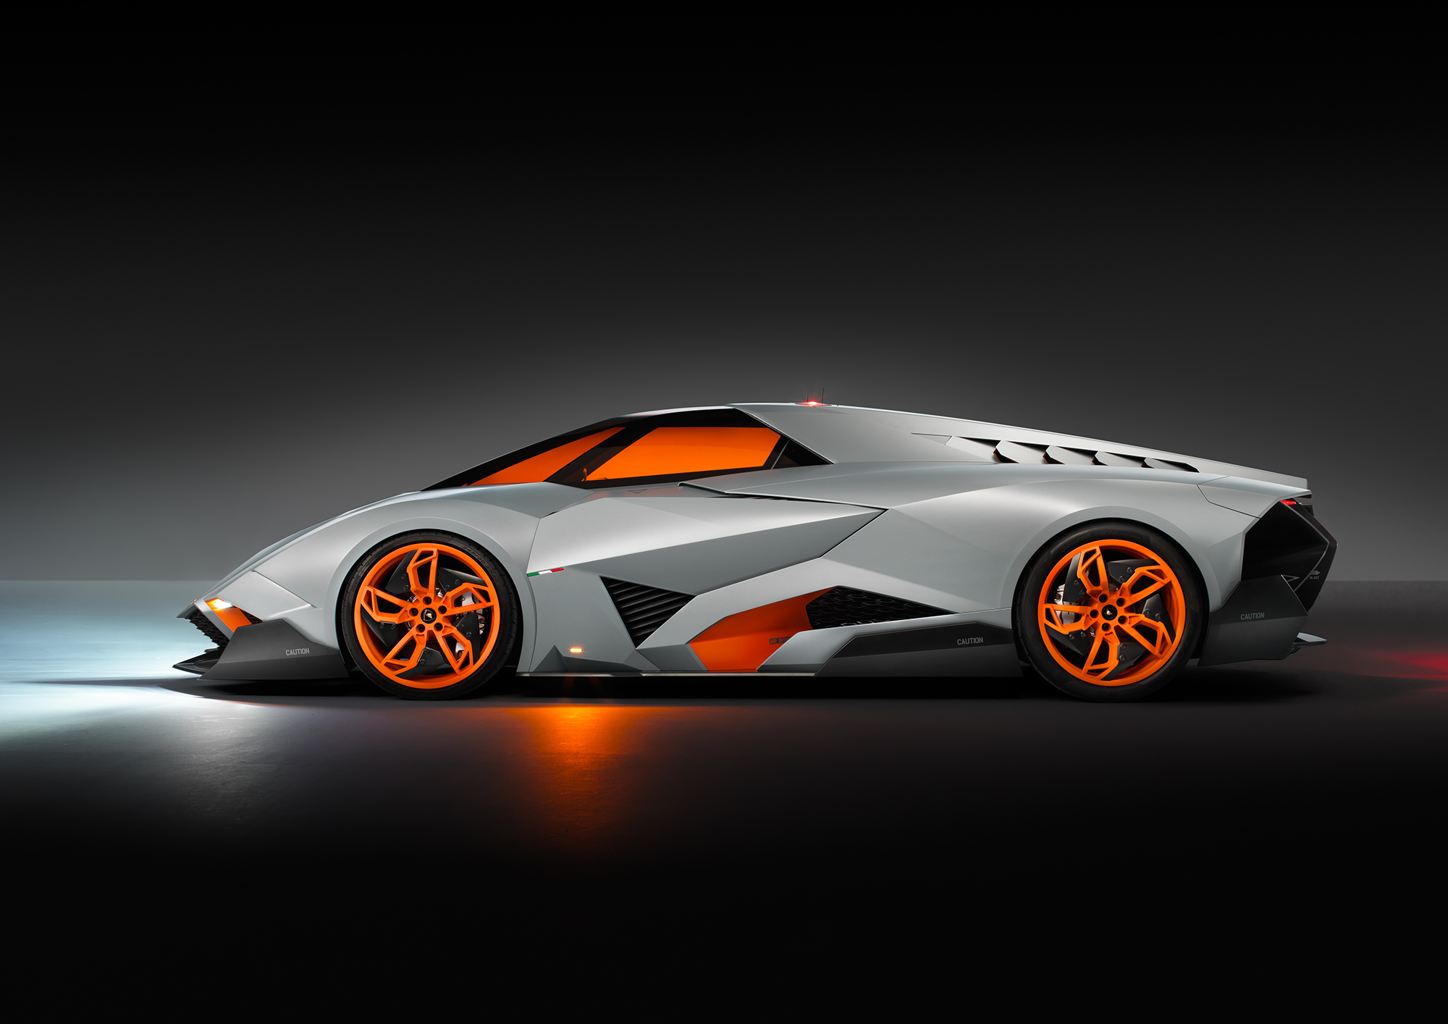 Lamborghini's wild new concept car